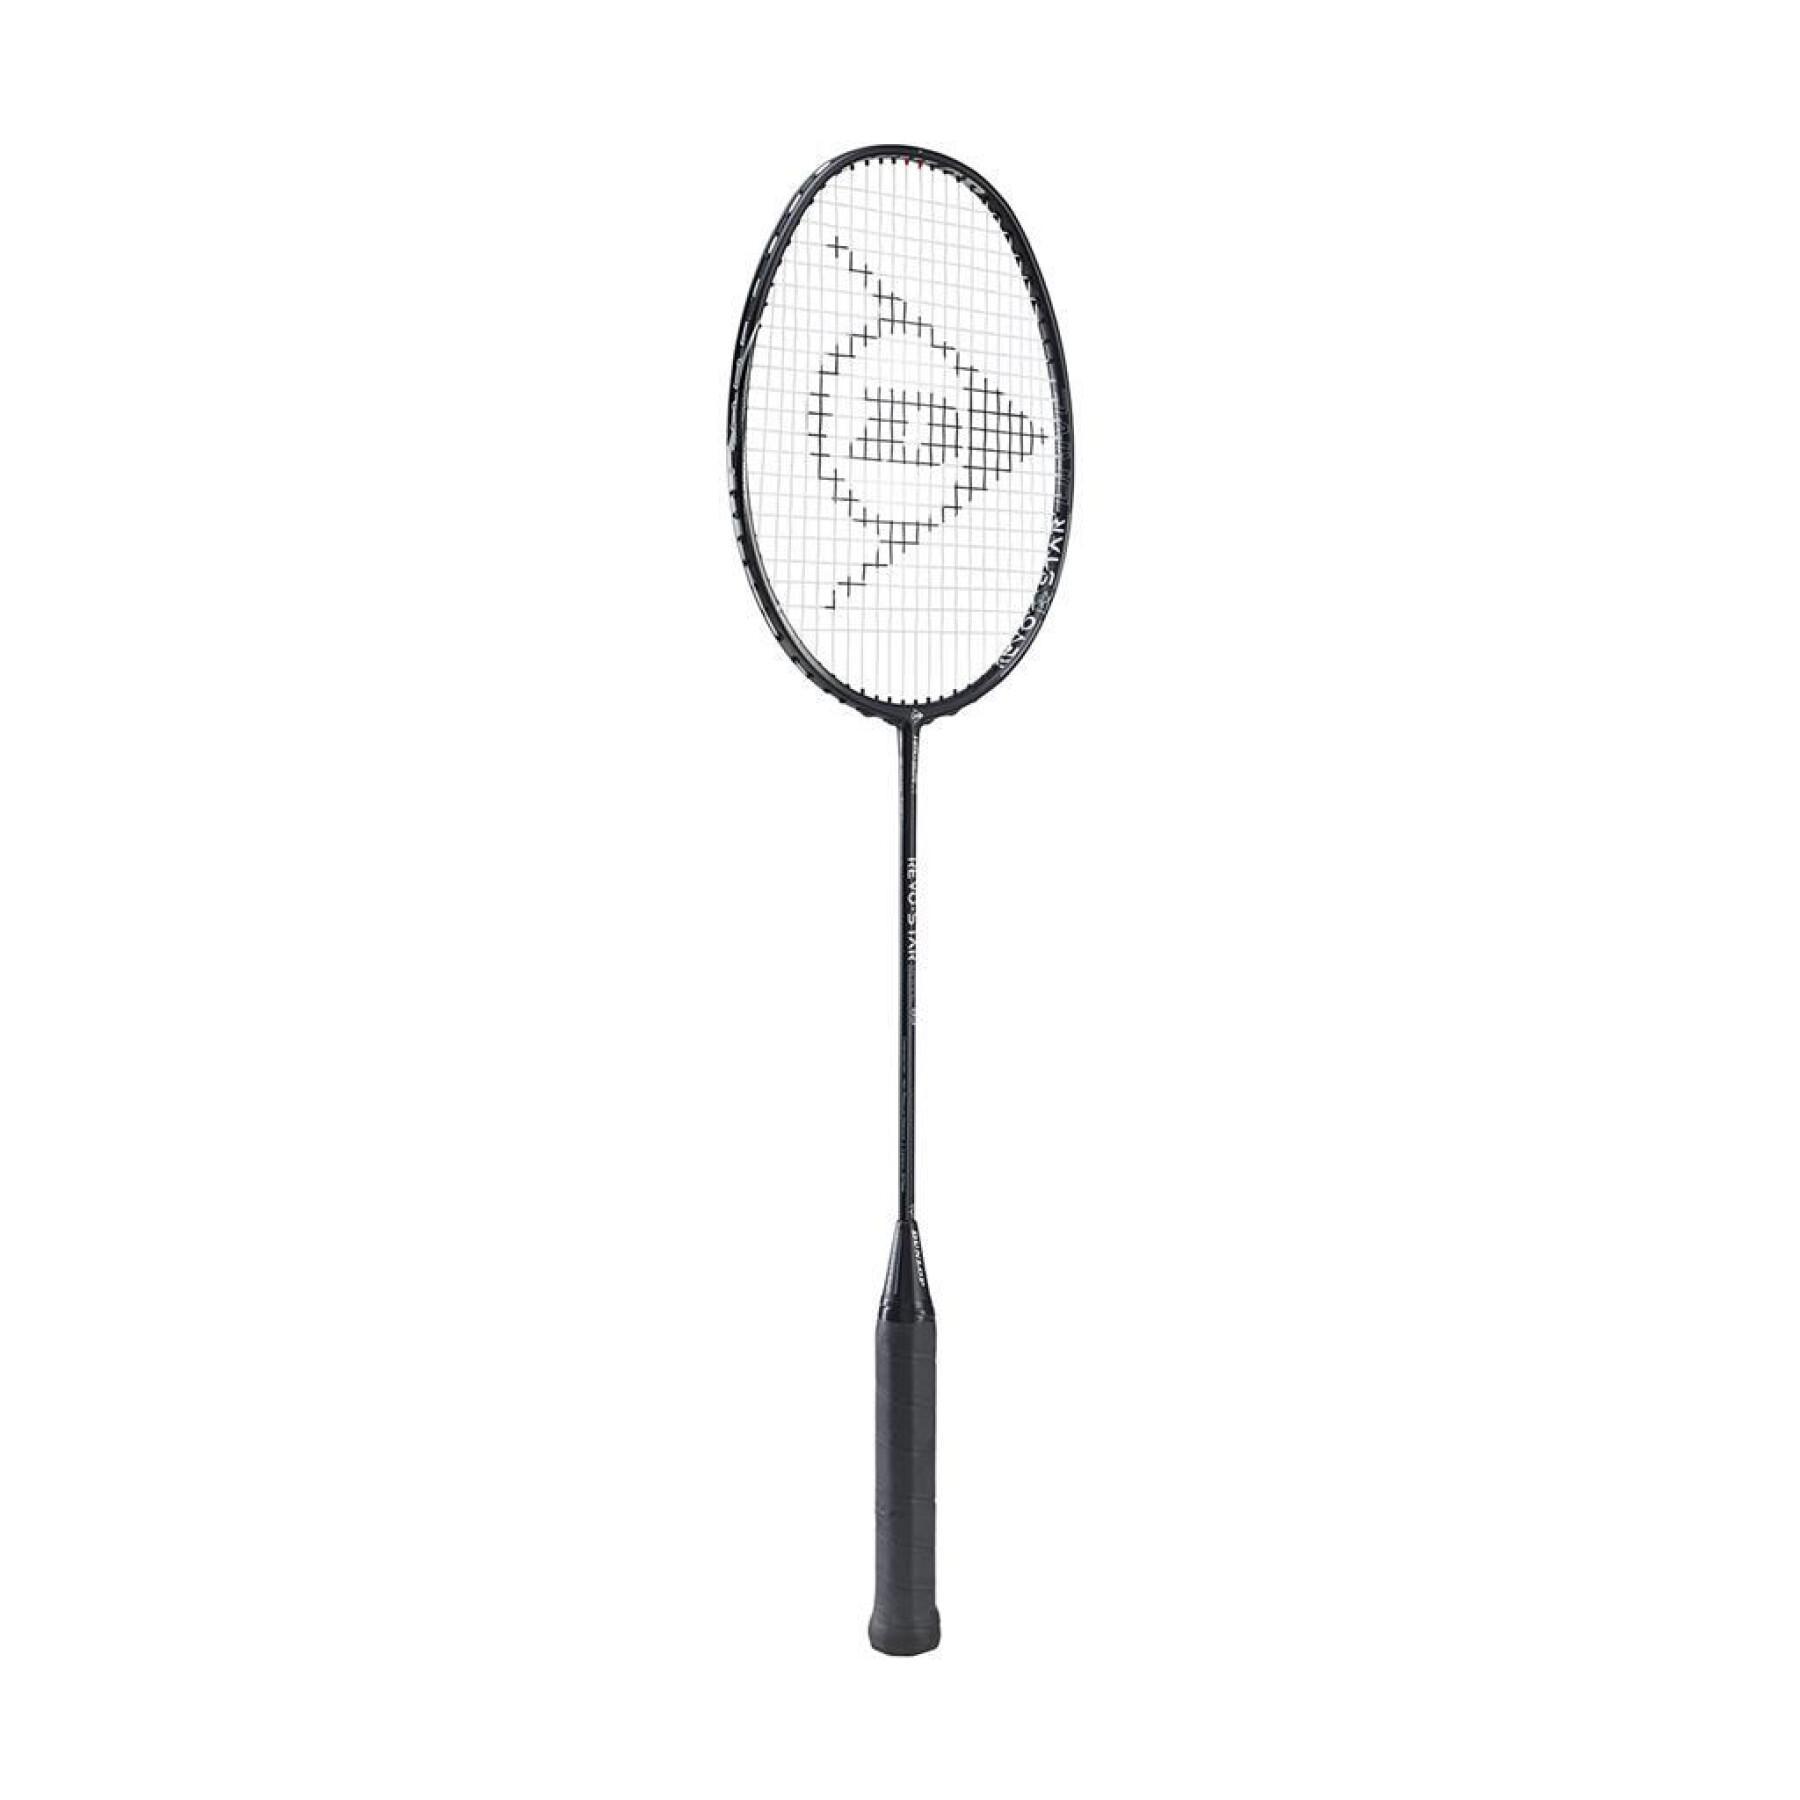 Badmintonschläger Dunlop Revo-Star Drive 83 G3 Hl